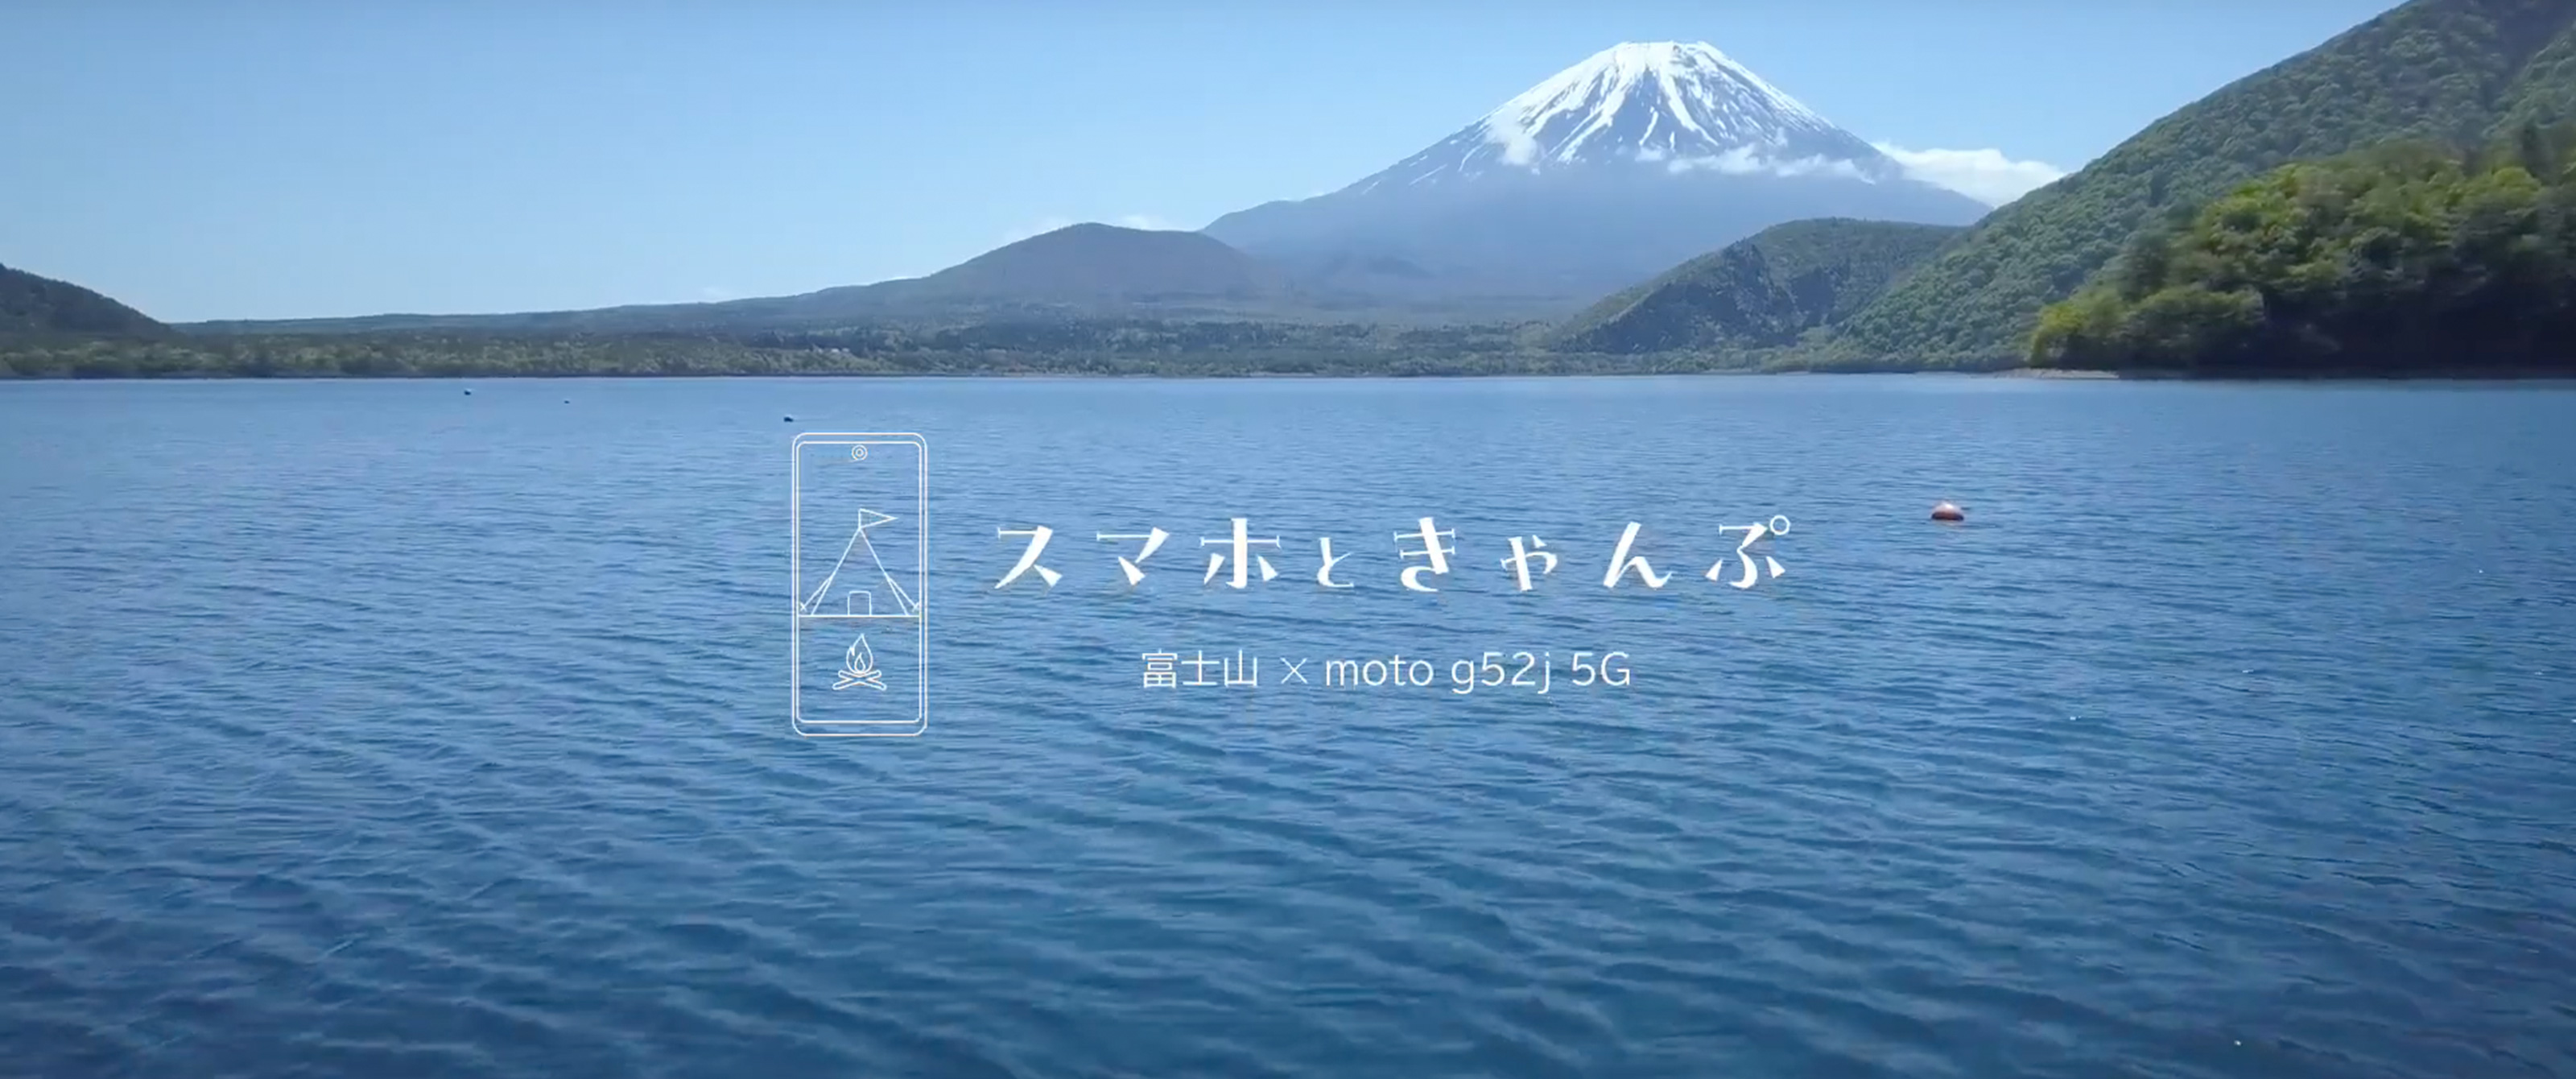 キャンプアニメの聖地「浩庵キャンプ場」でモトローラ「moto g52j 5G」をフル活用。初夏の富士山と本栖湖ブルーをお楽しみ下さい。